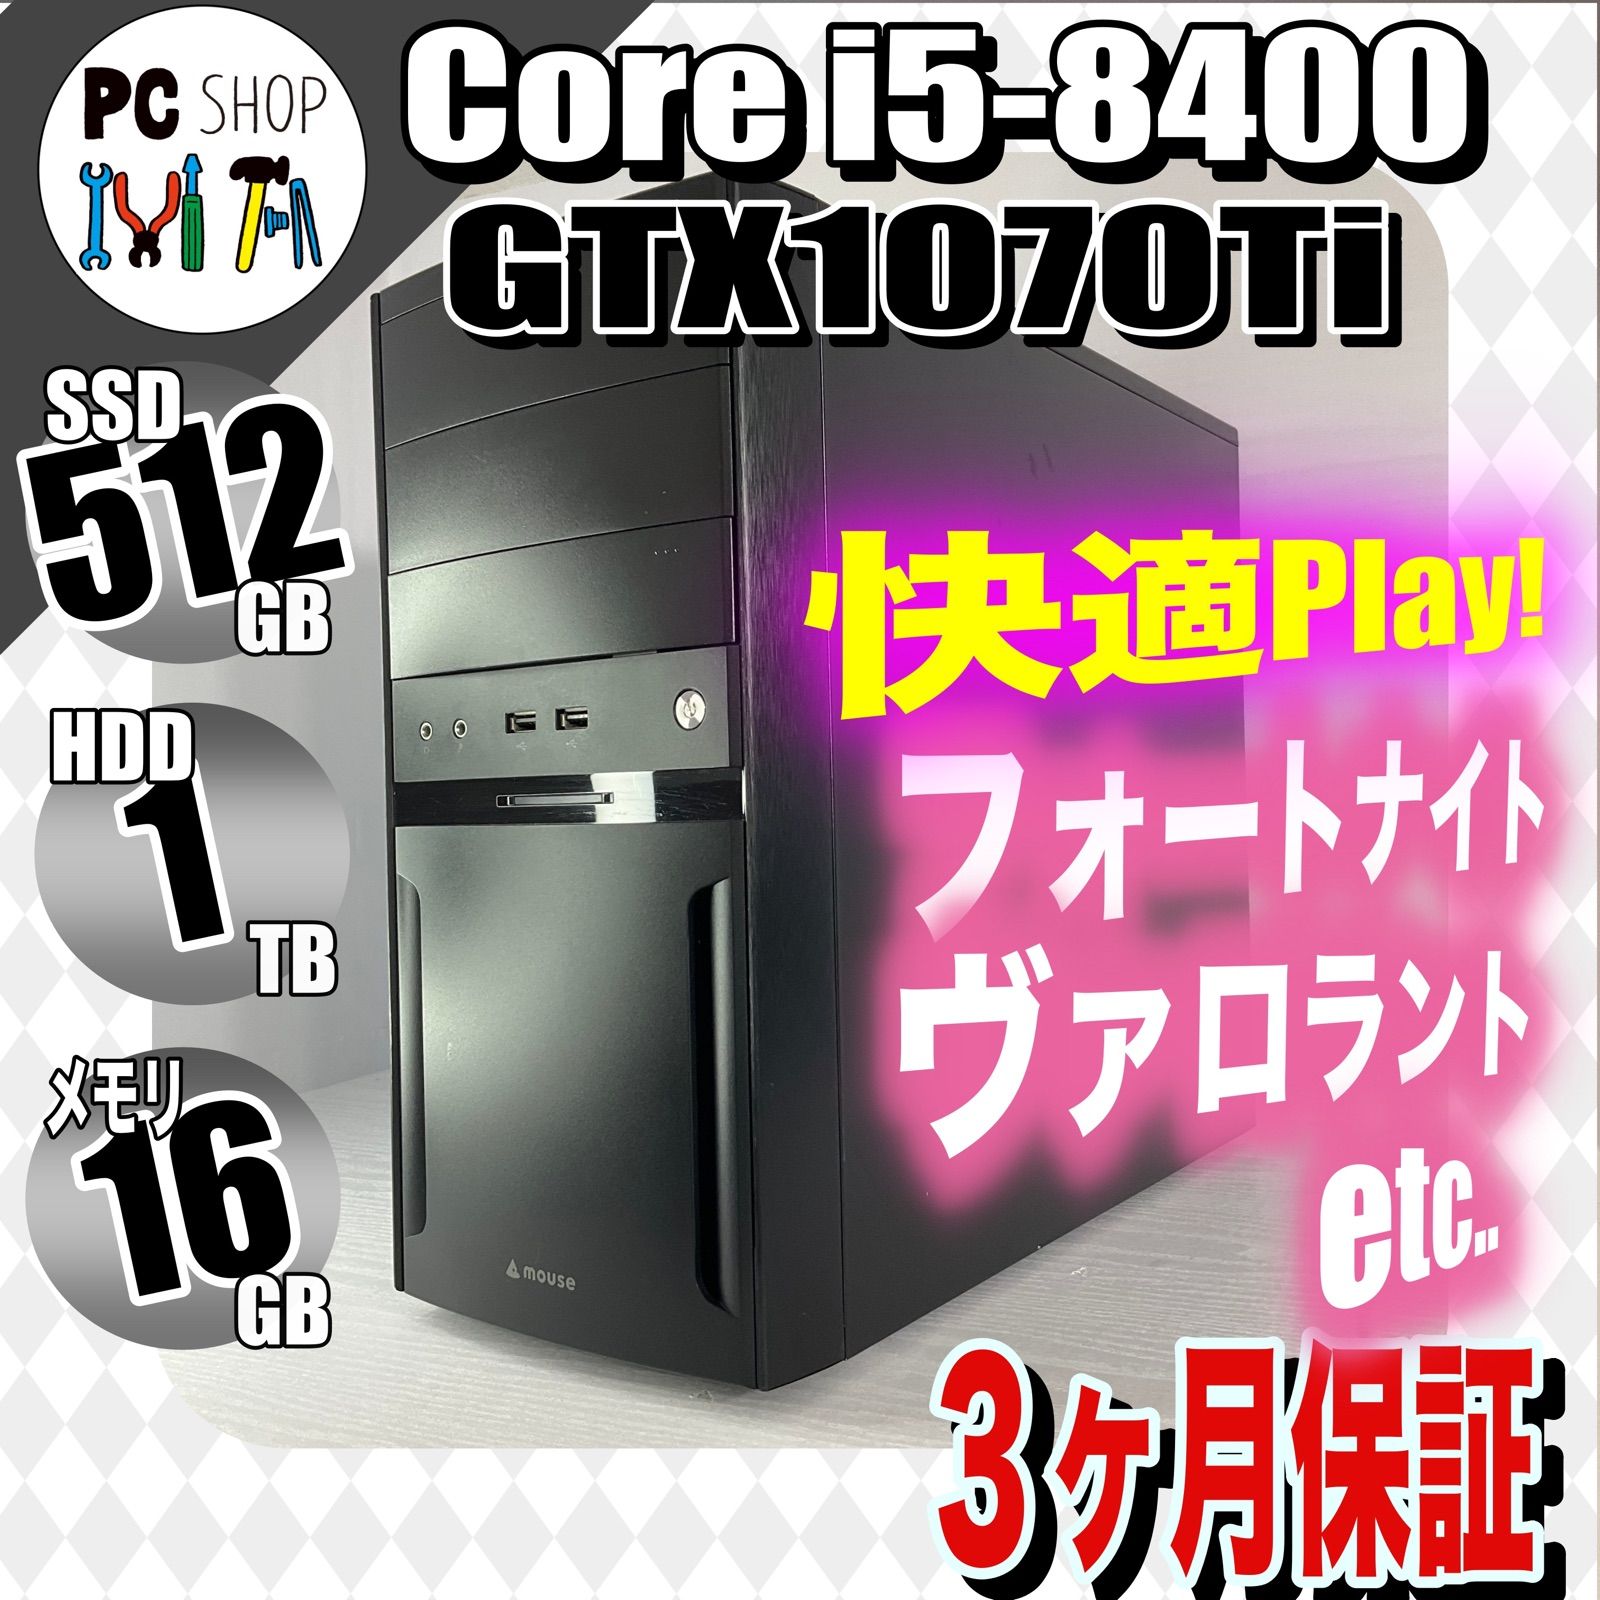 ゲーミングPC i5-8400 16GB GTX 1070Ti